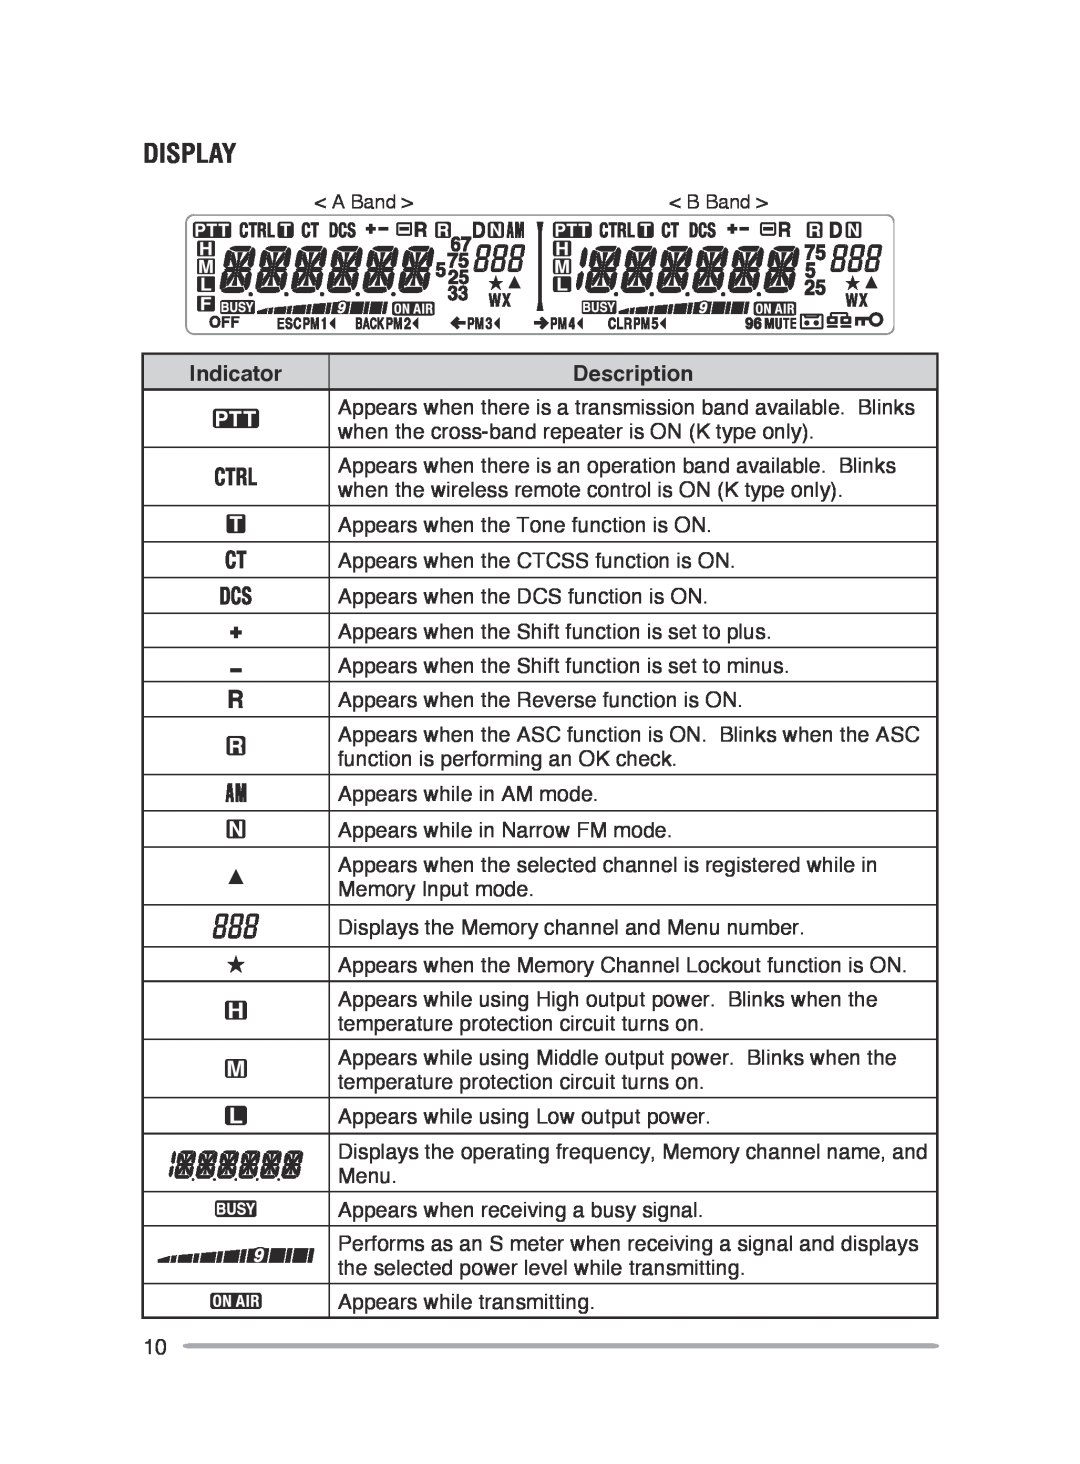 Kenwood TM-V71E, TM-V71A instruction manual Display, Indicator, Description 